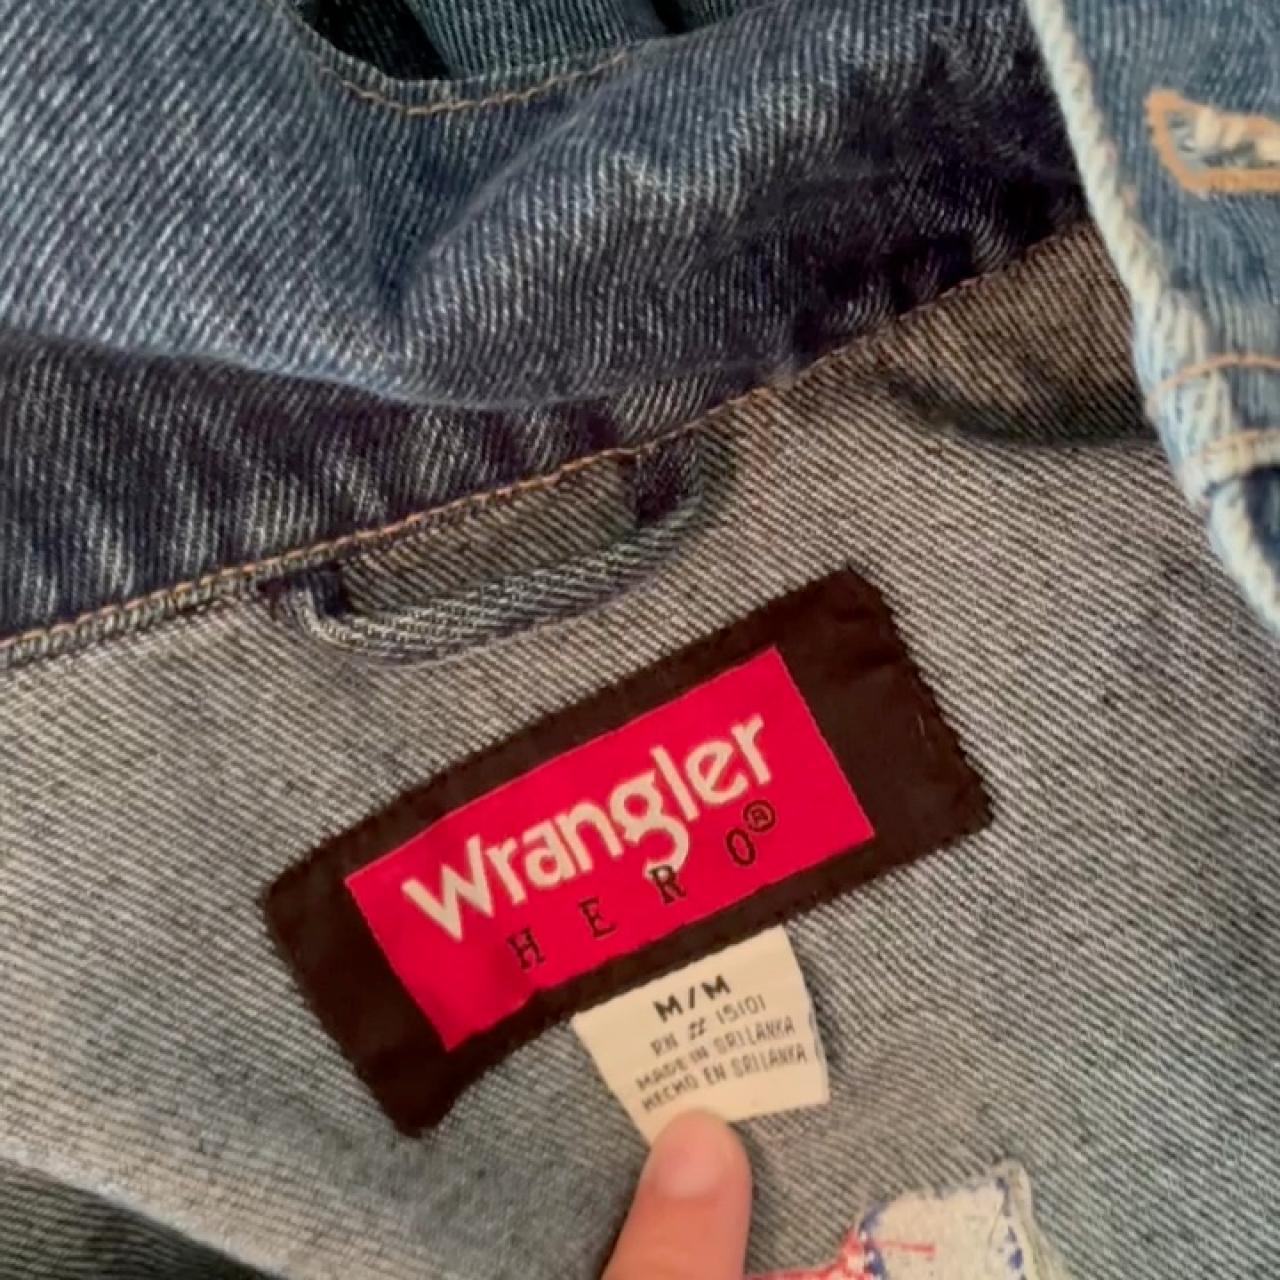 Vintage Wrangler Denim Jacket w Flag embroidery 🧵... - Depop